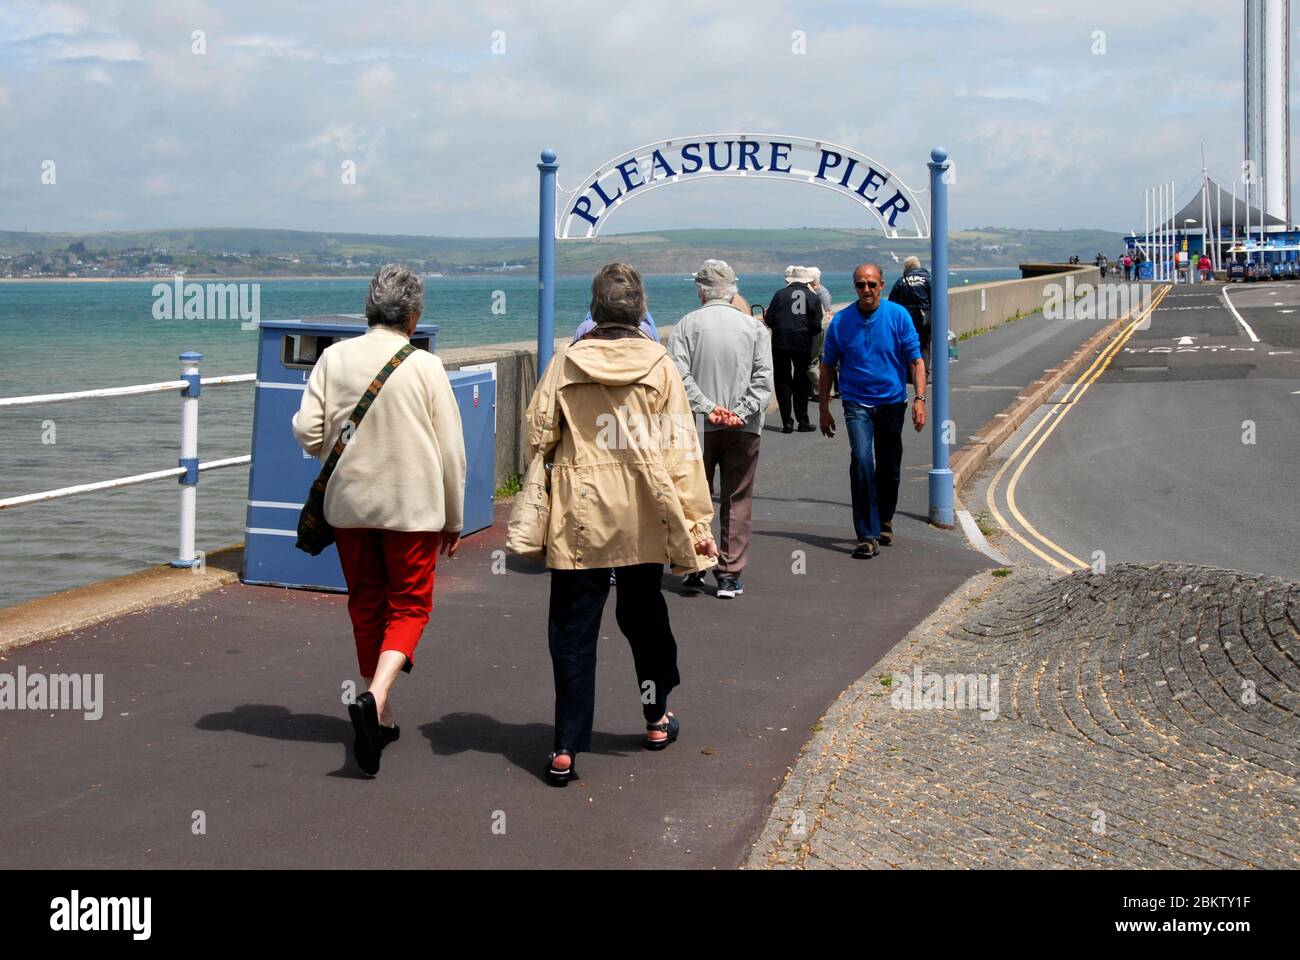 Groupes de personnes âgées entrant et sortant de Pleasure Pier, Weymouth, Dorset, Angleterre Banque D'Images